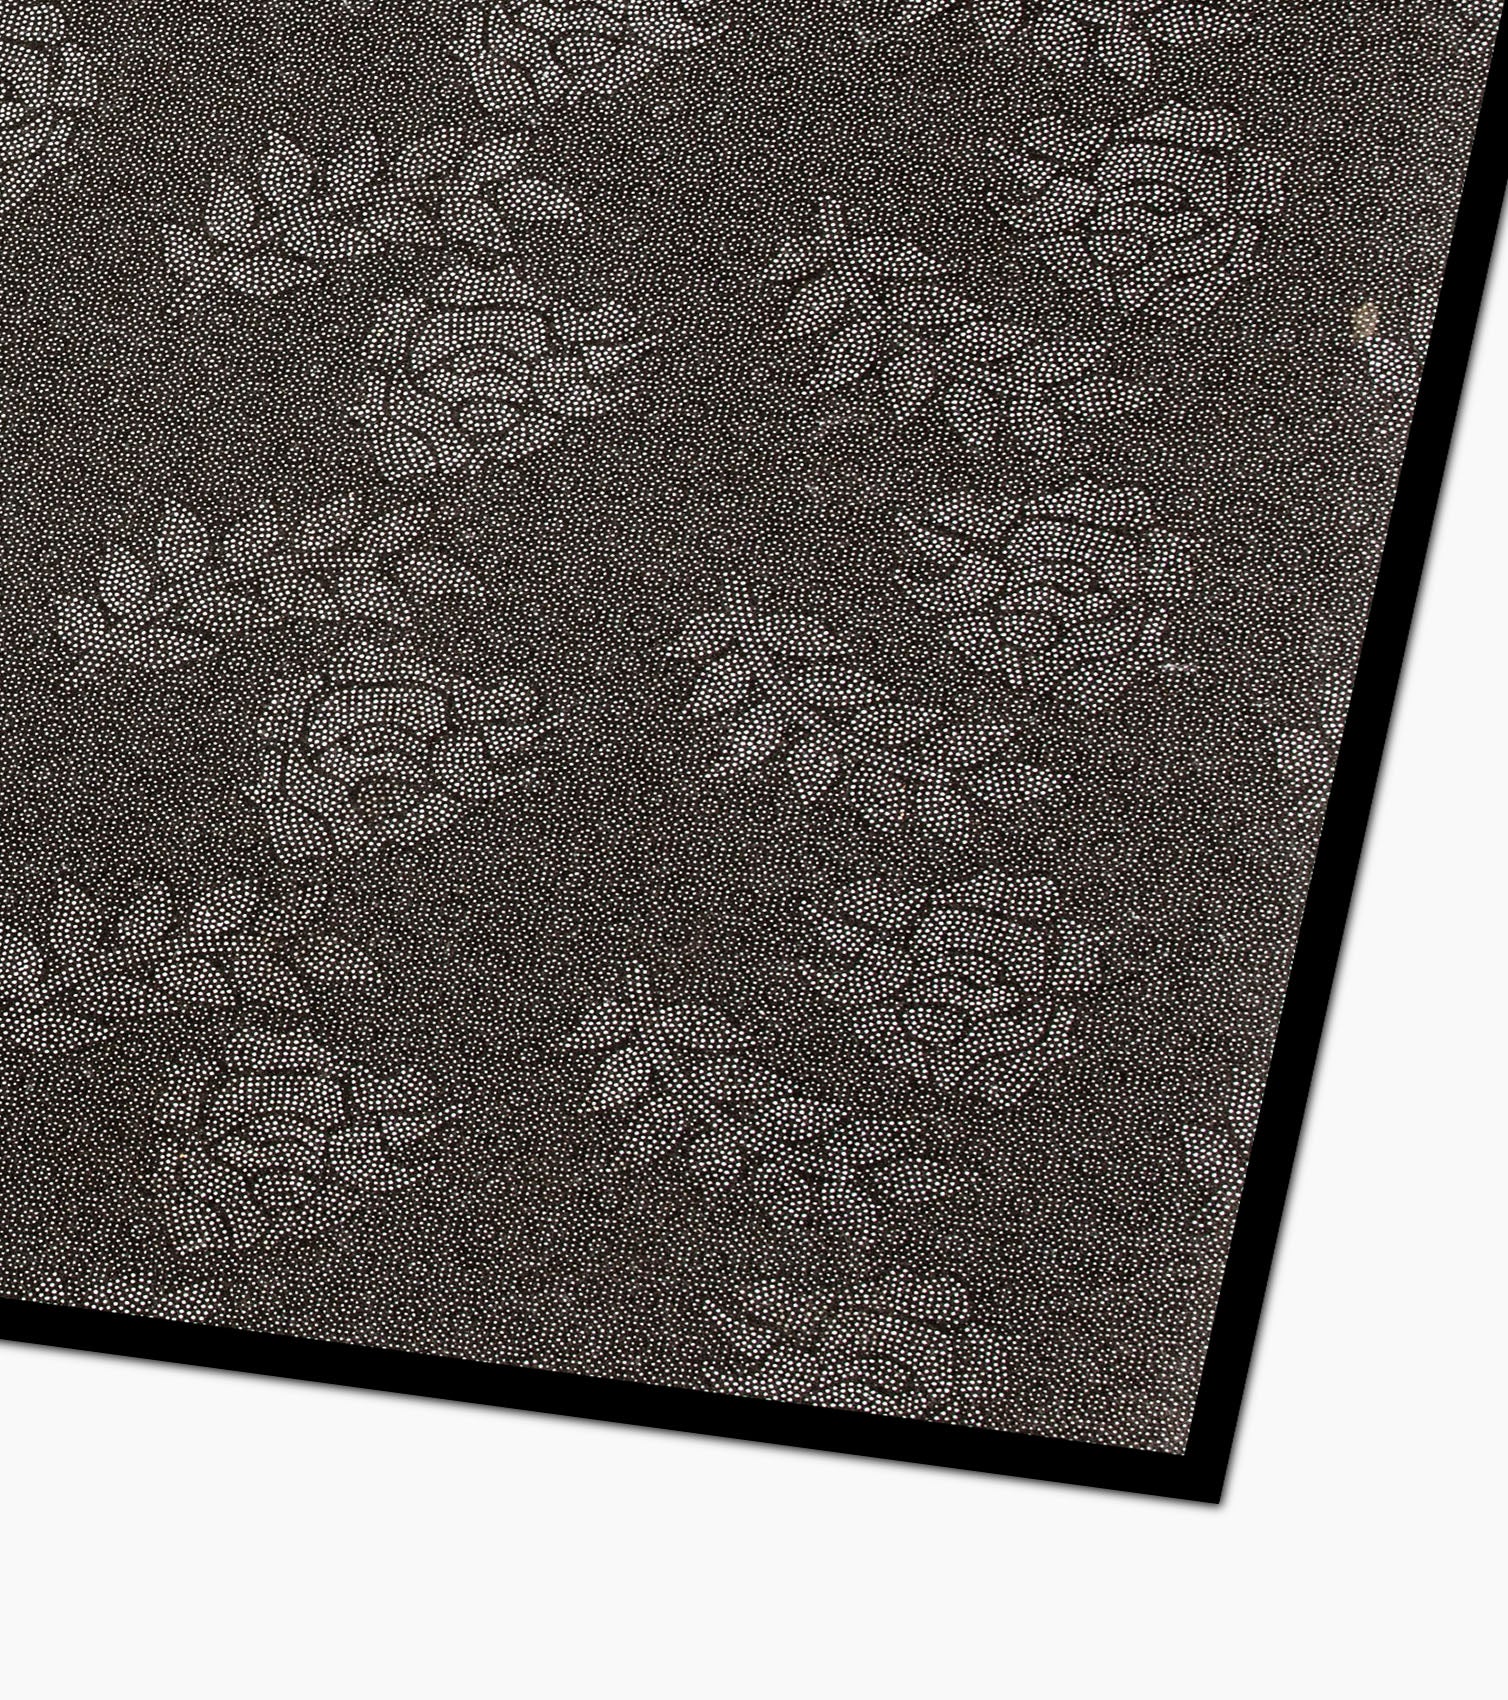 Drum Floor Carpet - Design Close Up